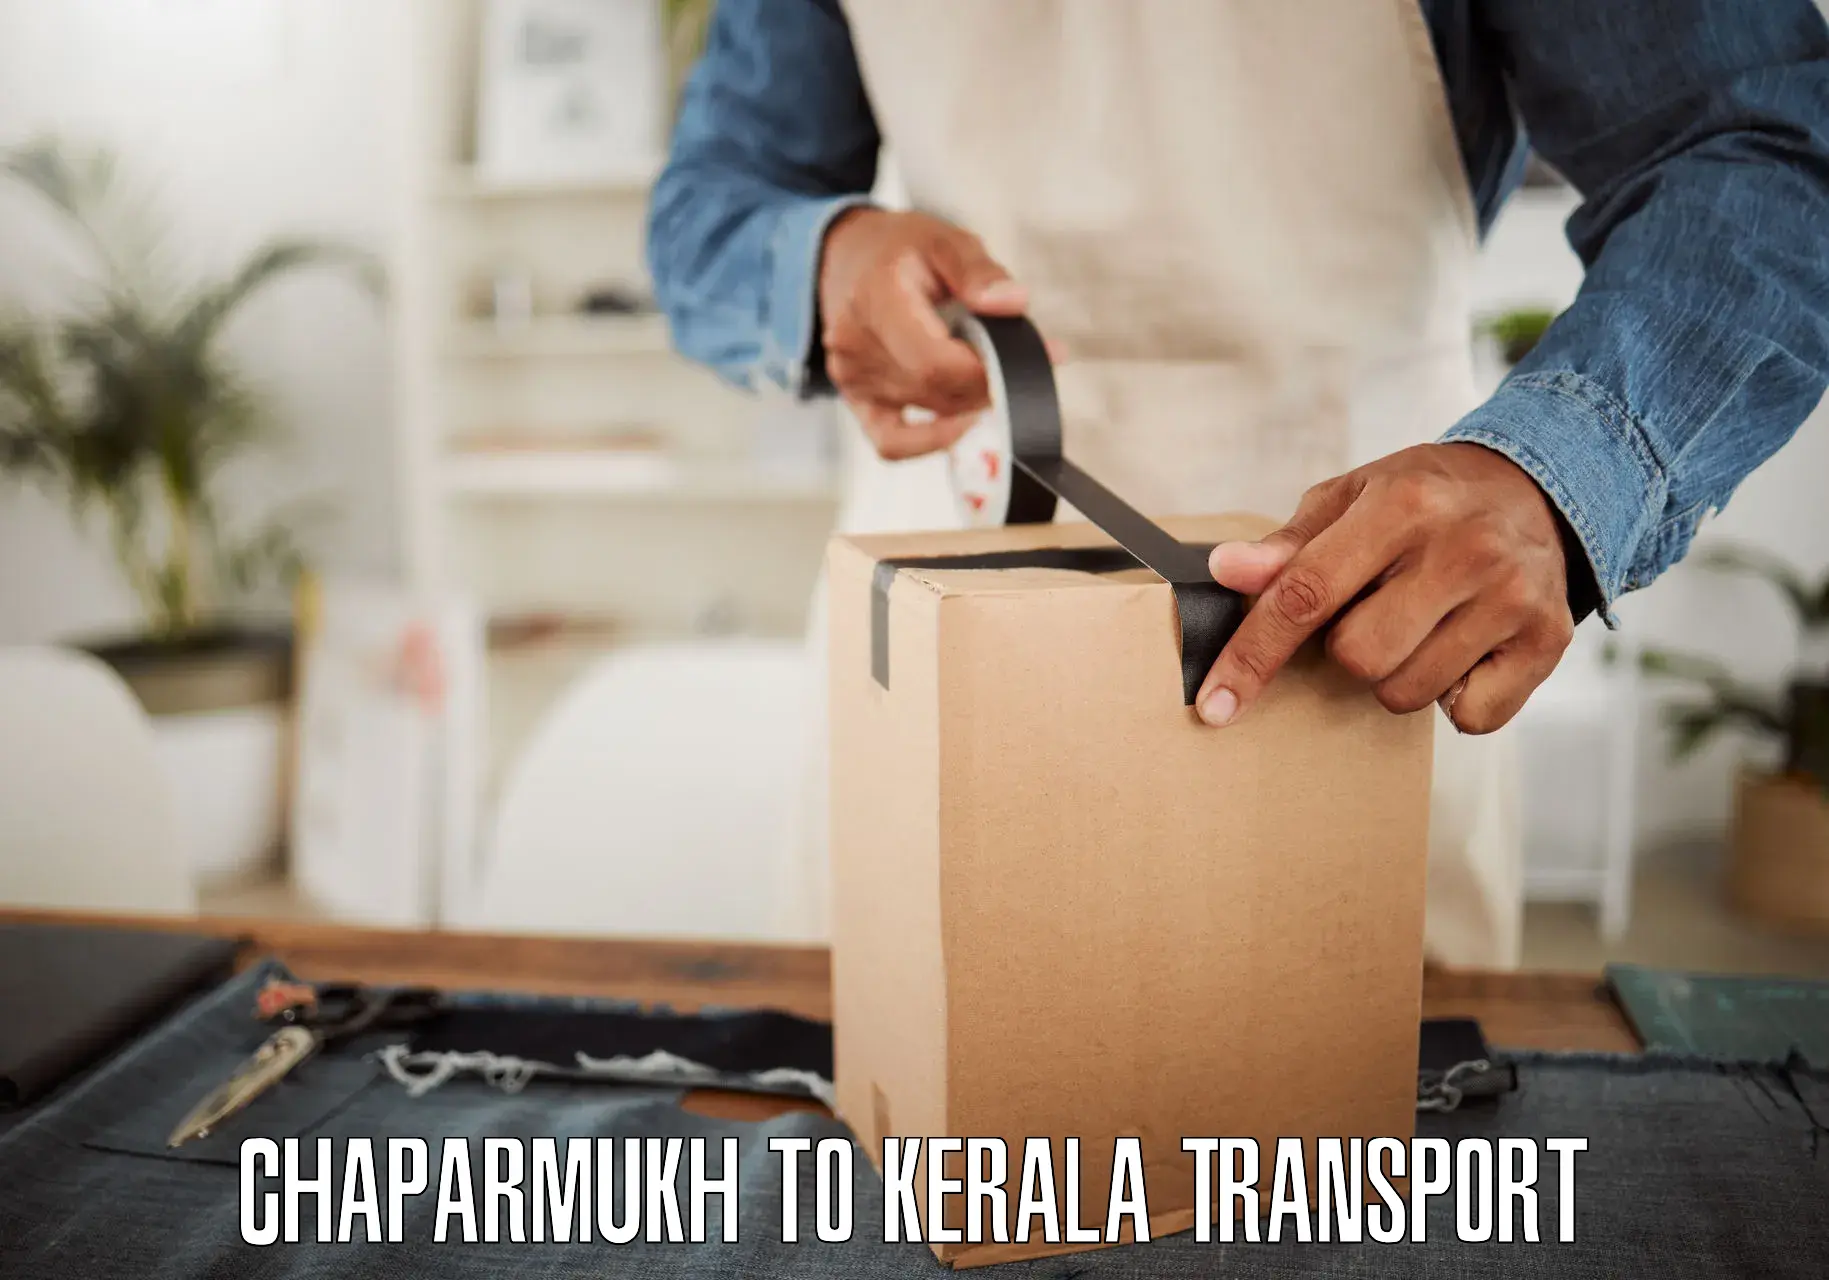 Transport in sharing Chaparmukh to Panayathamparamba